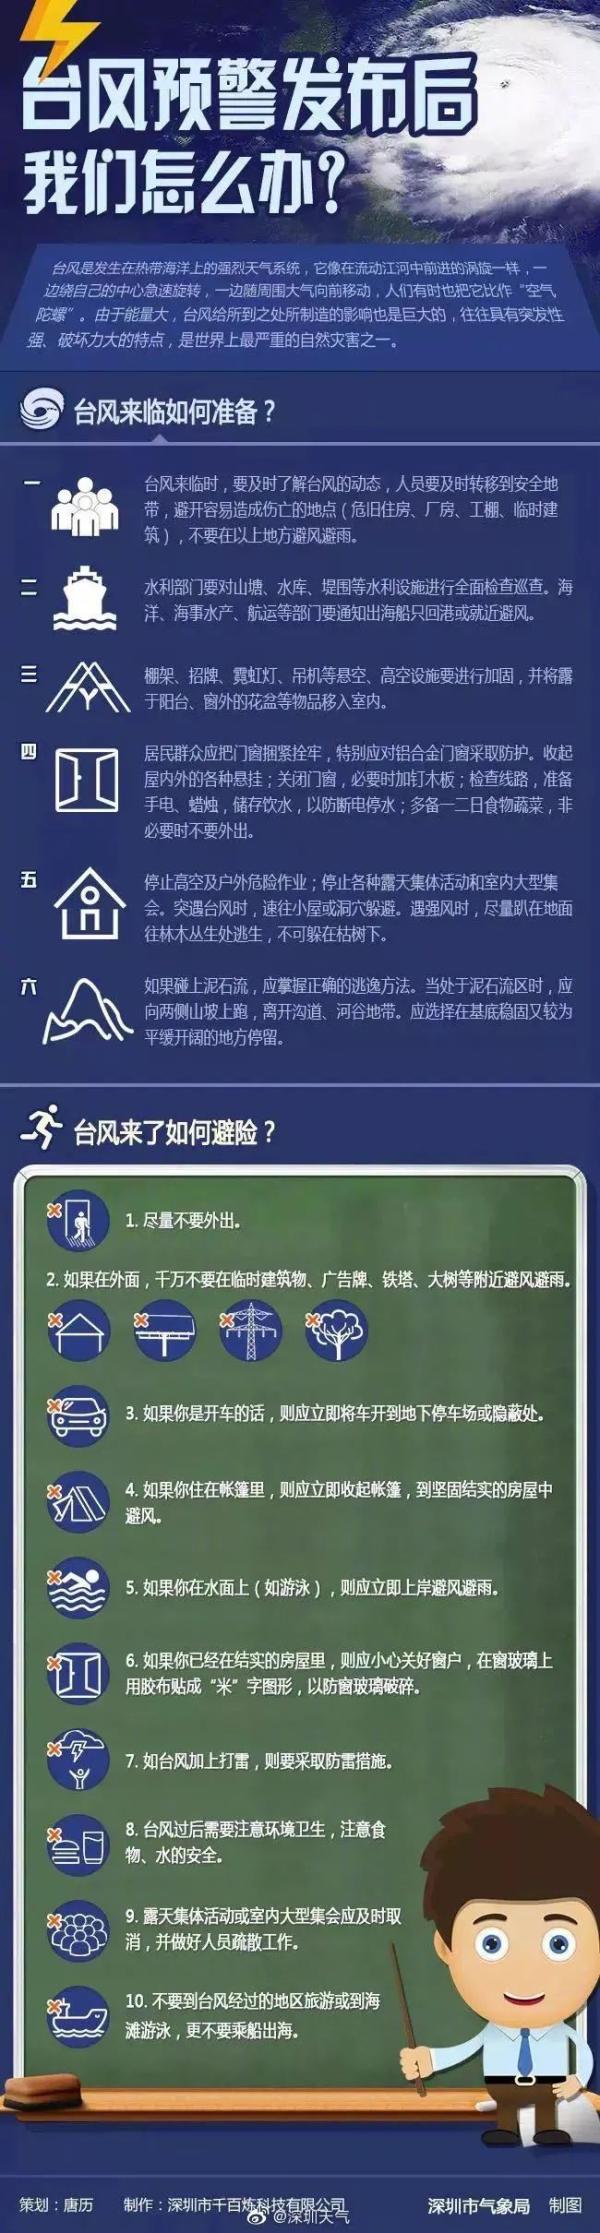 註意! 臺風“森拉克”攜風帶雨來襲, 南寧發佈大風藍色預警-圖2